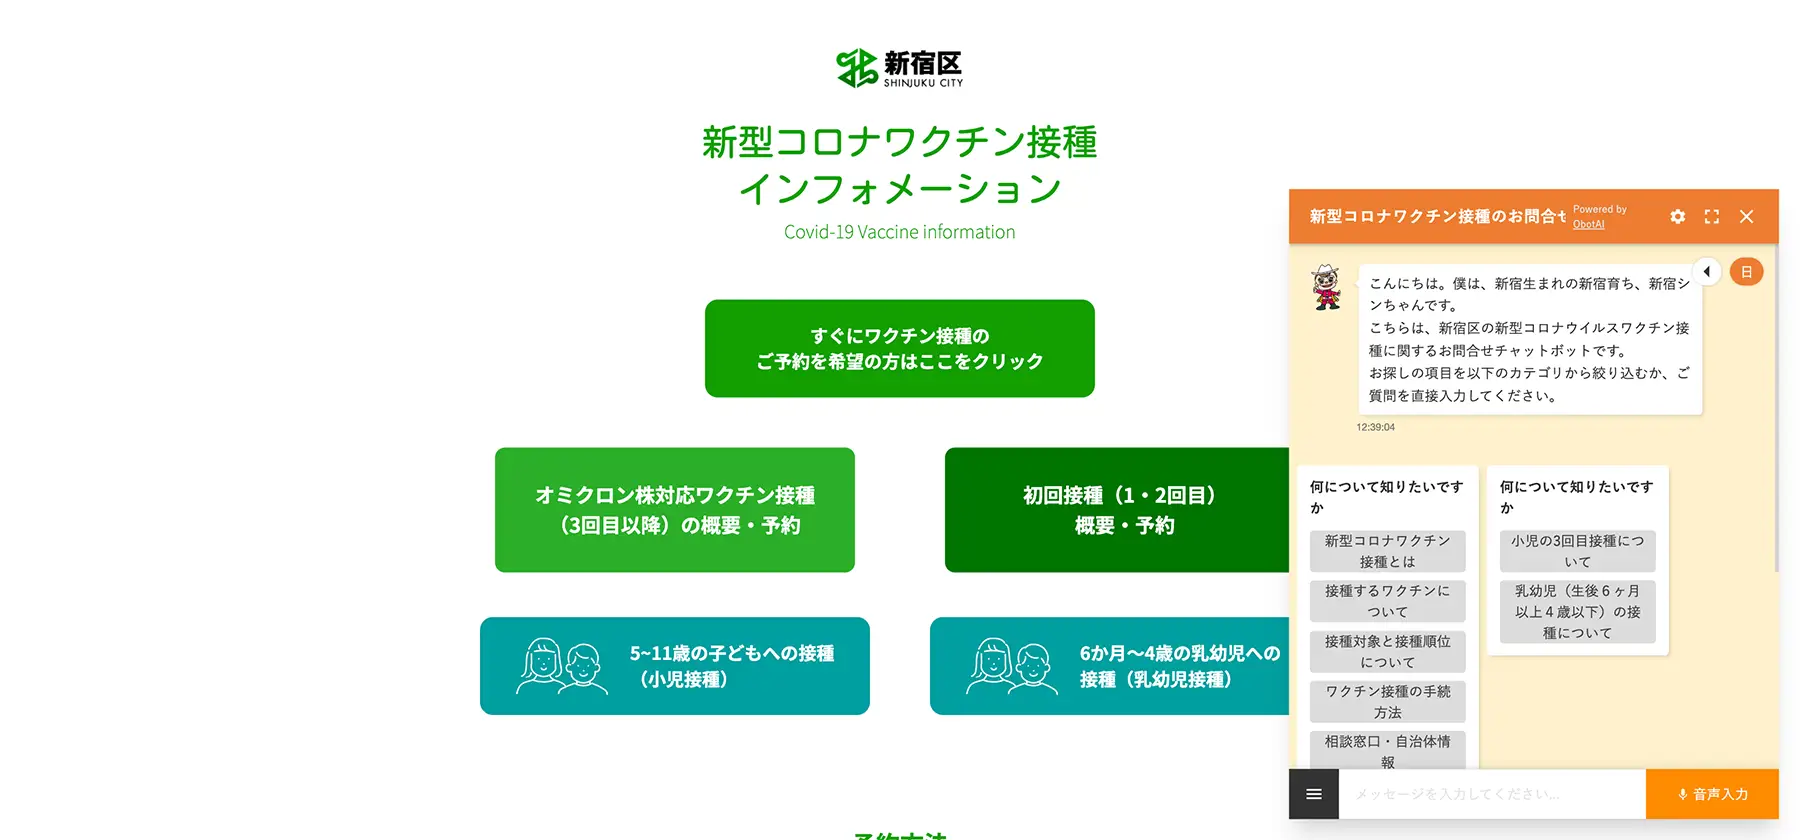 東京都新宿区公式WEBサイト「新型コロナワクチン接種インフォメーション」